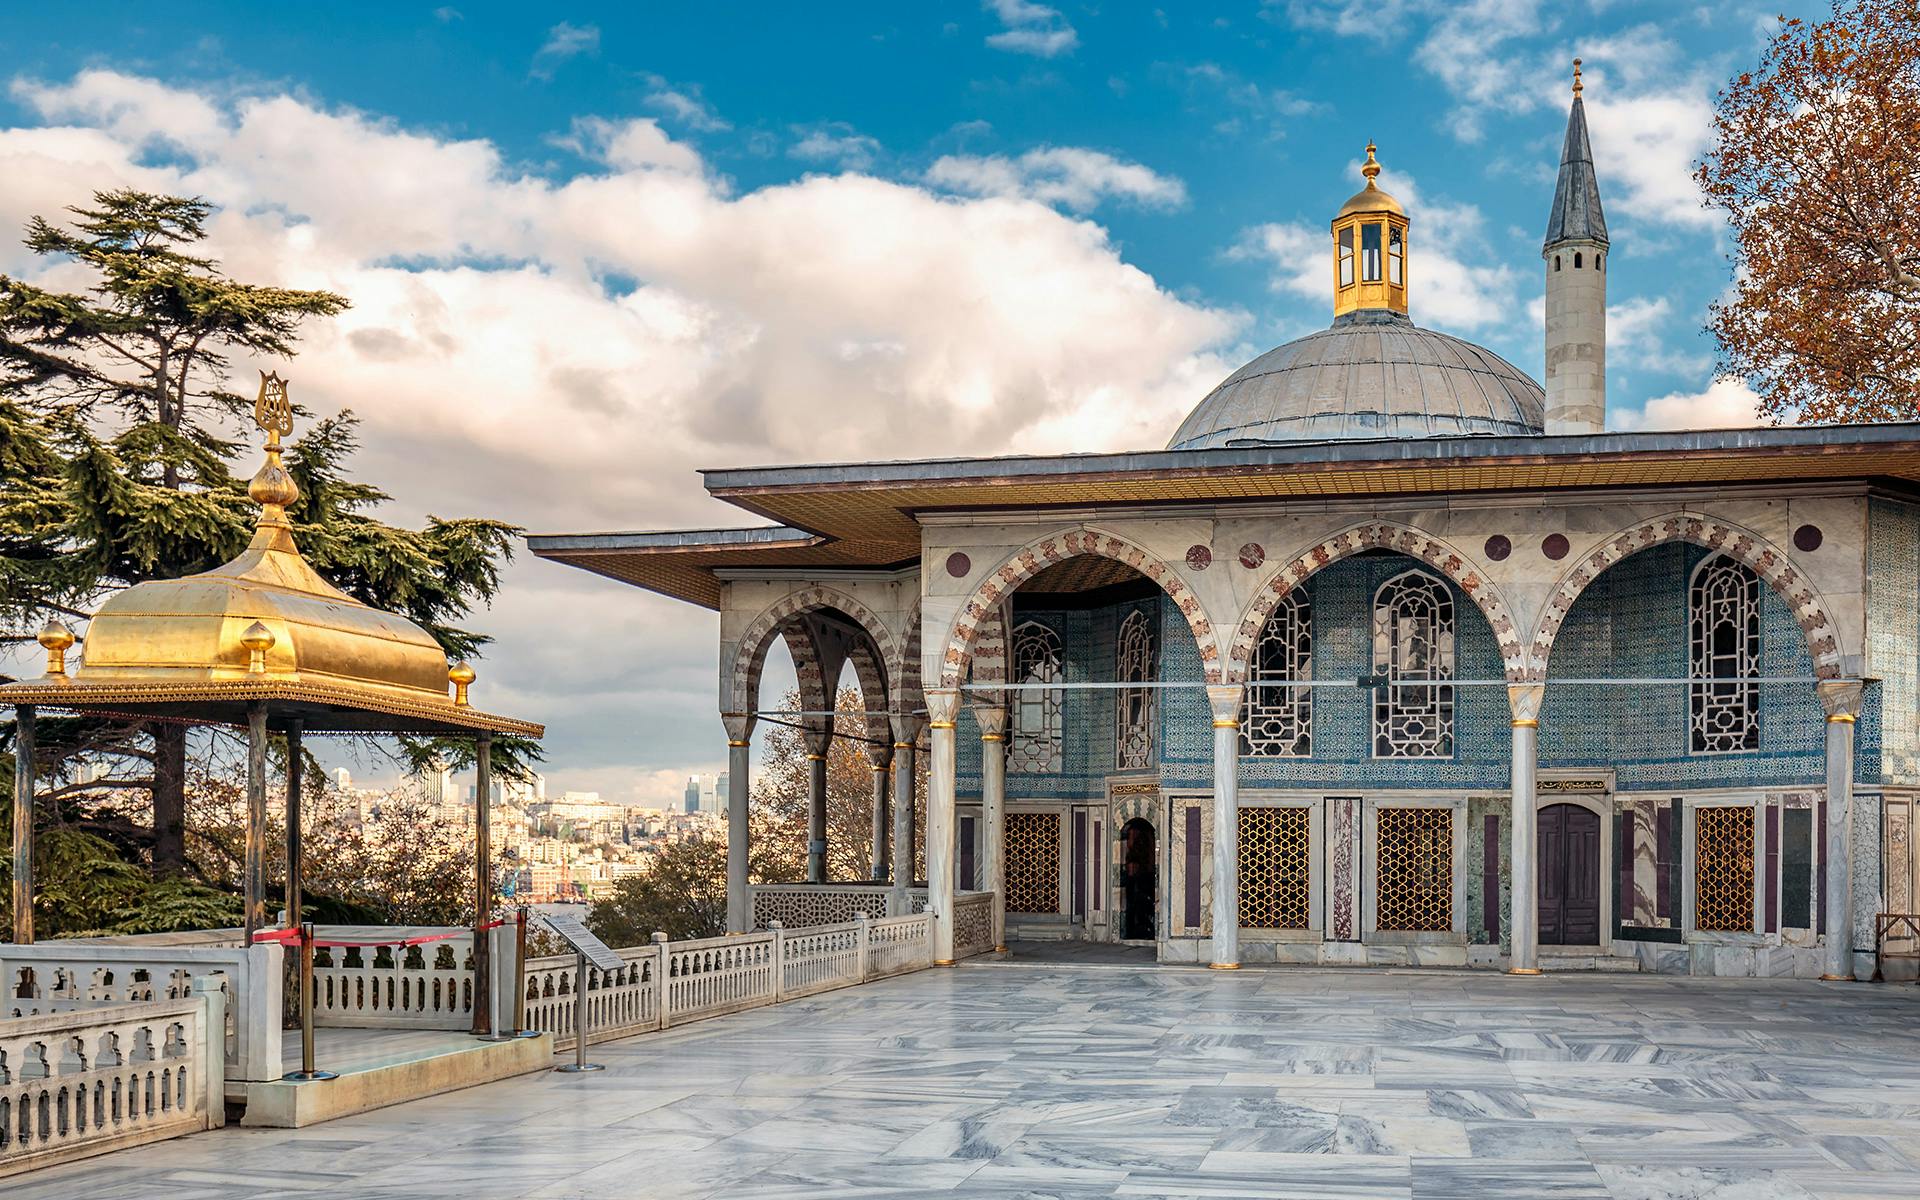 Visita guiada e entrada preferencial para o Palácio de Topkapi e o Harém